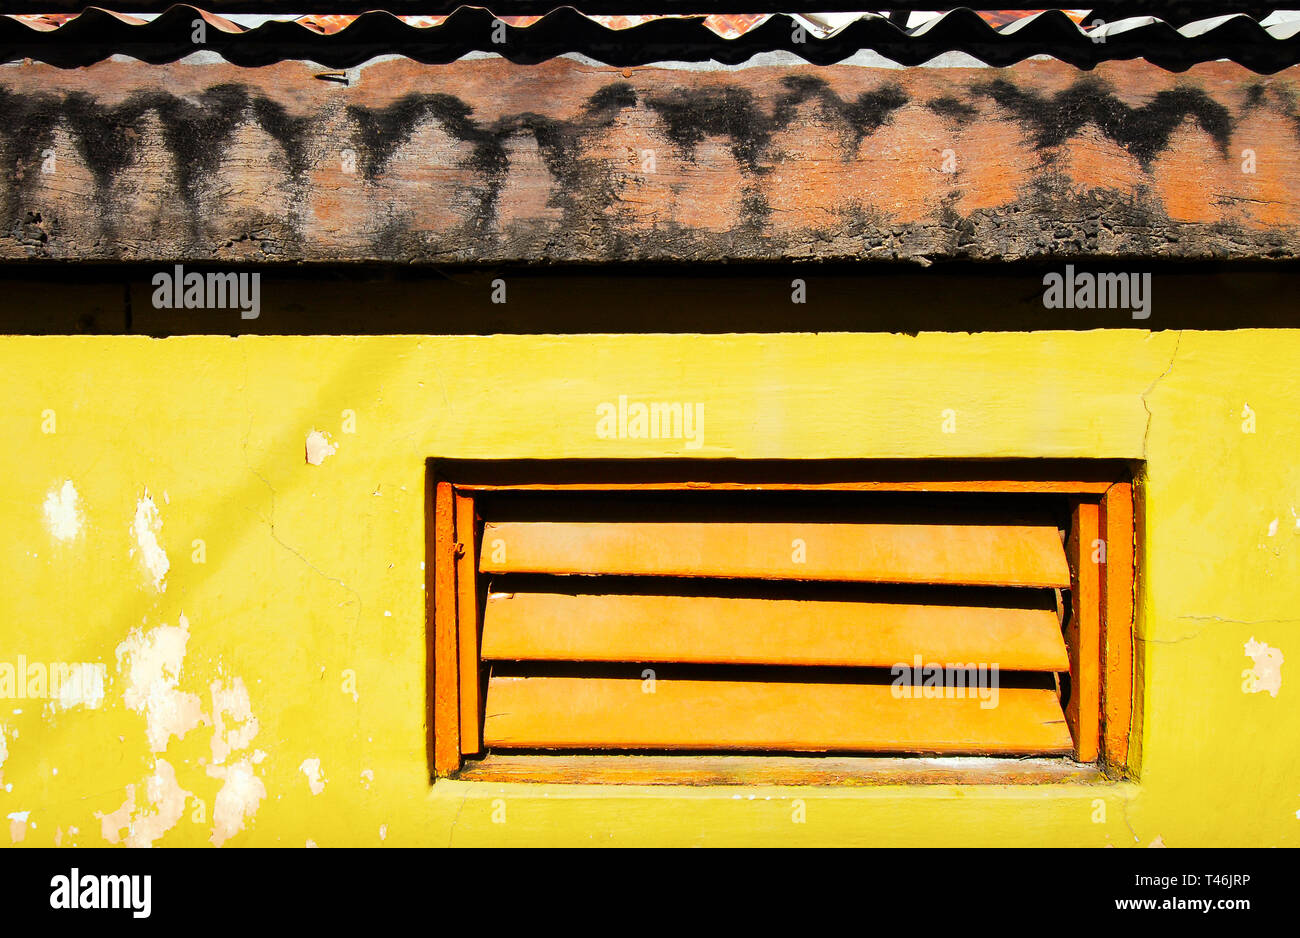 Colore arancio persiane alle finestre in un giallo brillante parete dipinta con ombre scure dal tetto in legno con lamiere grecate Foto Stock